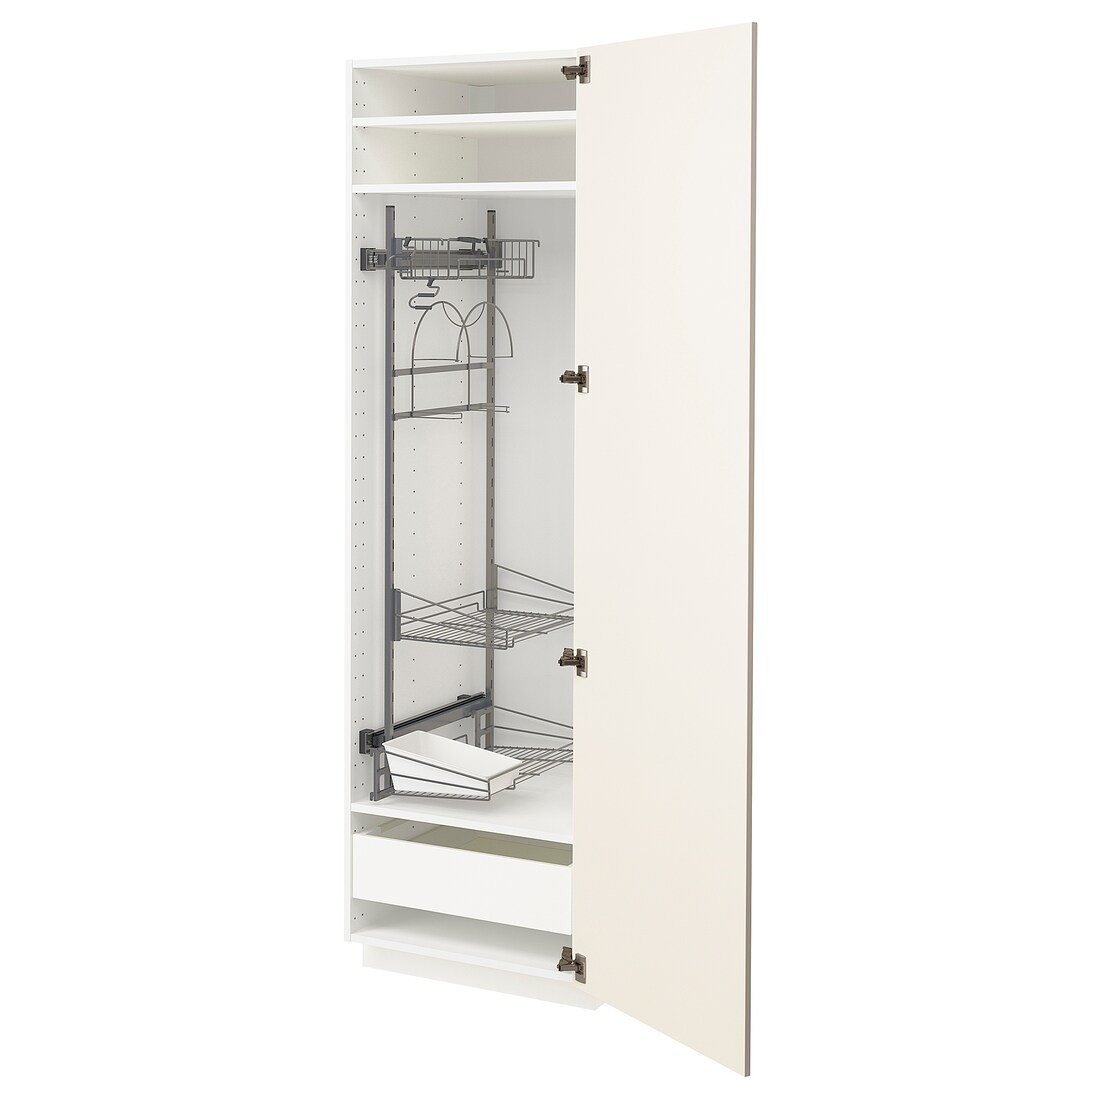 METOD МЕТОД / MAXIMERA МАКСИМЕРА Высокий шкаф с отделением для аксессуаров для уборки, белый / Bodbyn кремовый, 60x60x200 см